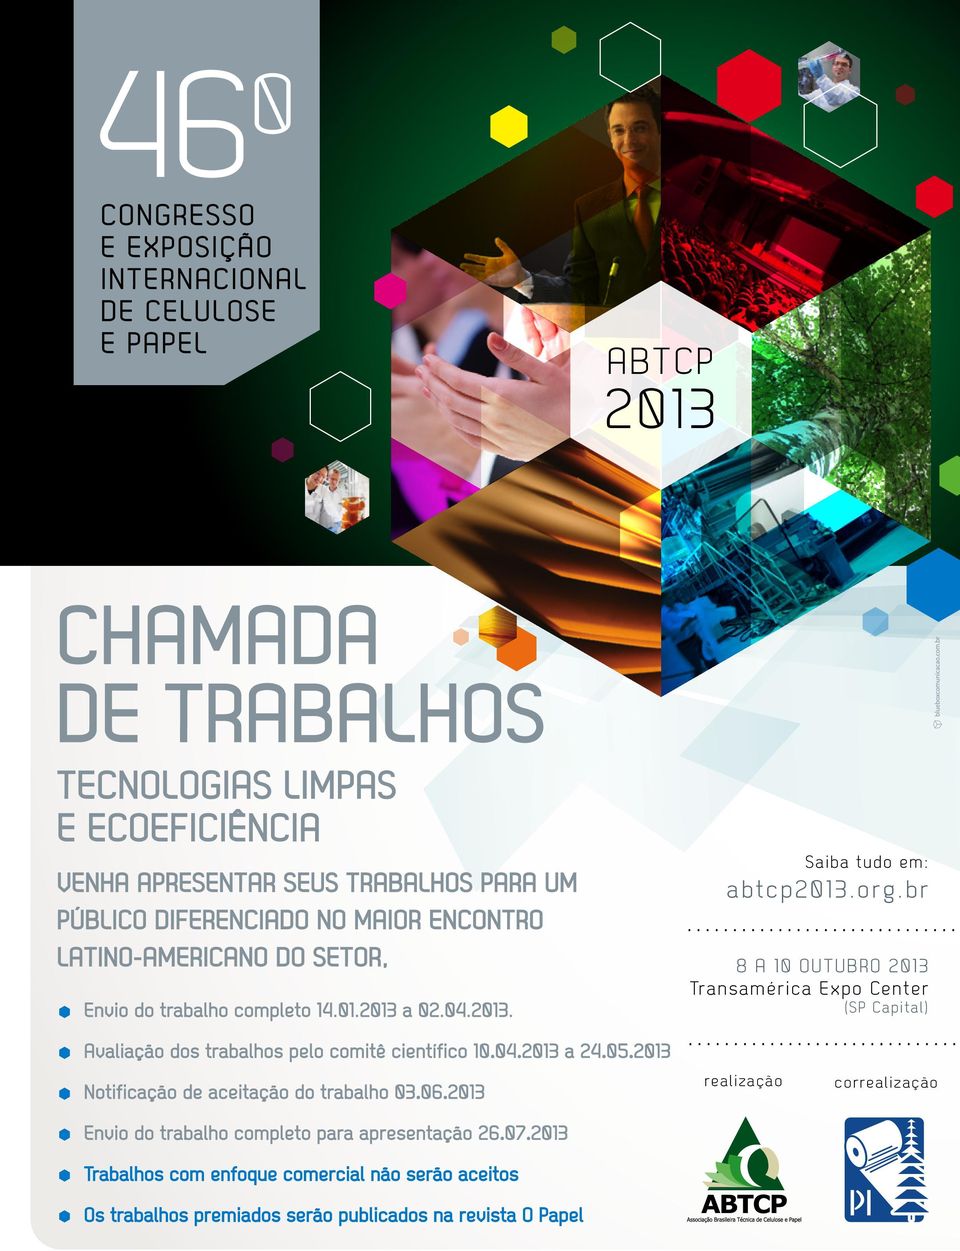 br 8 A 10 OUTUBRO 2013 Transamérica Expo Center (SP Capital) Avaliação dos trabalhos pelo comitê científico 10.04.2013 a 24.05.